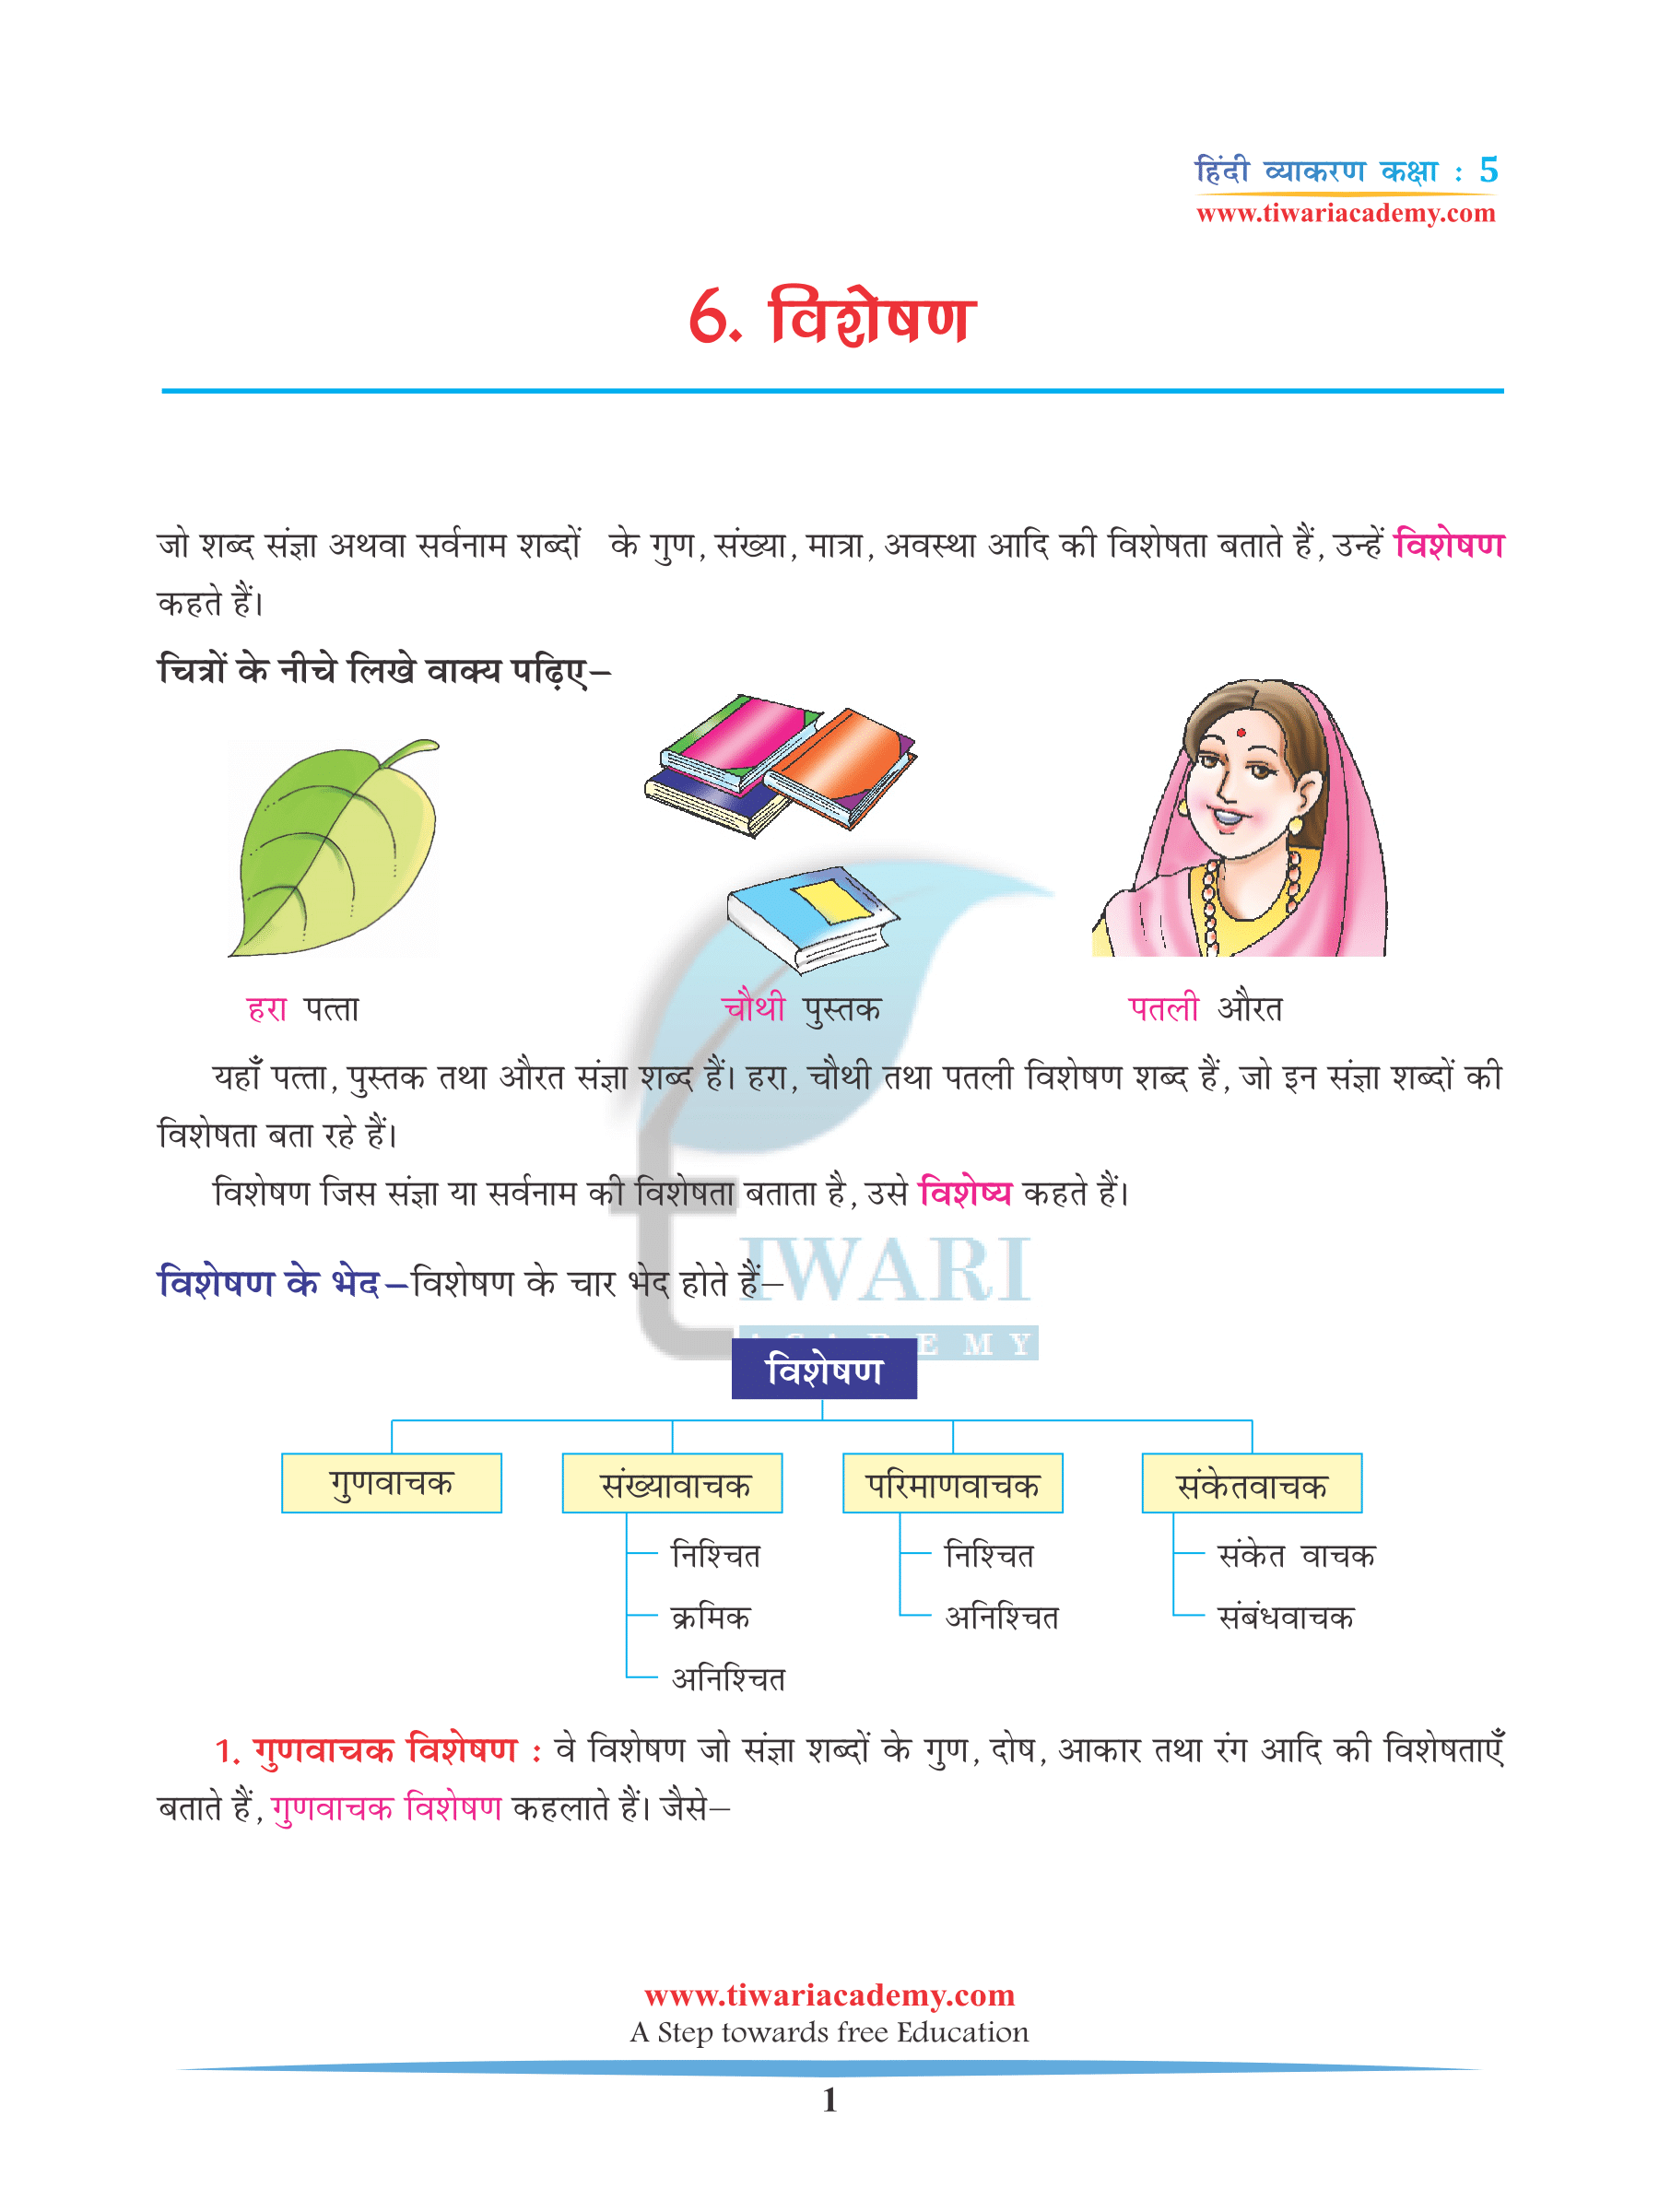 CBSE NCERT Solutions for Class 5 Hindi Grammar Chapter 6